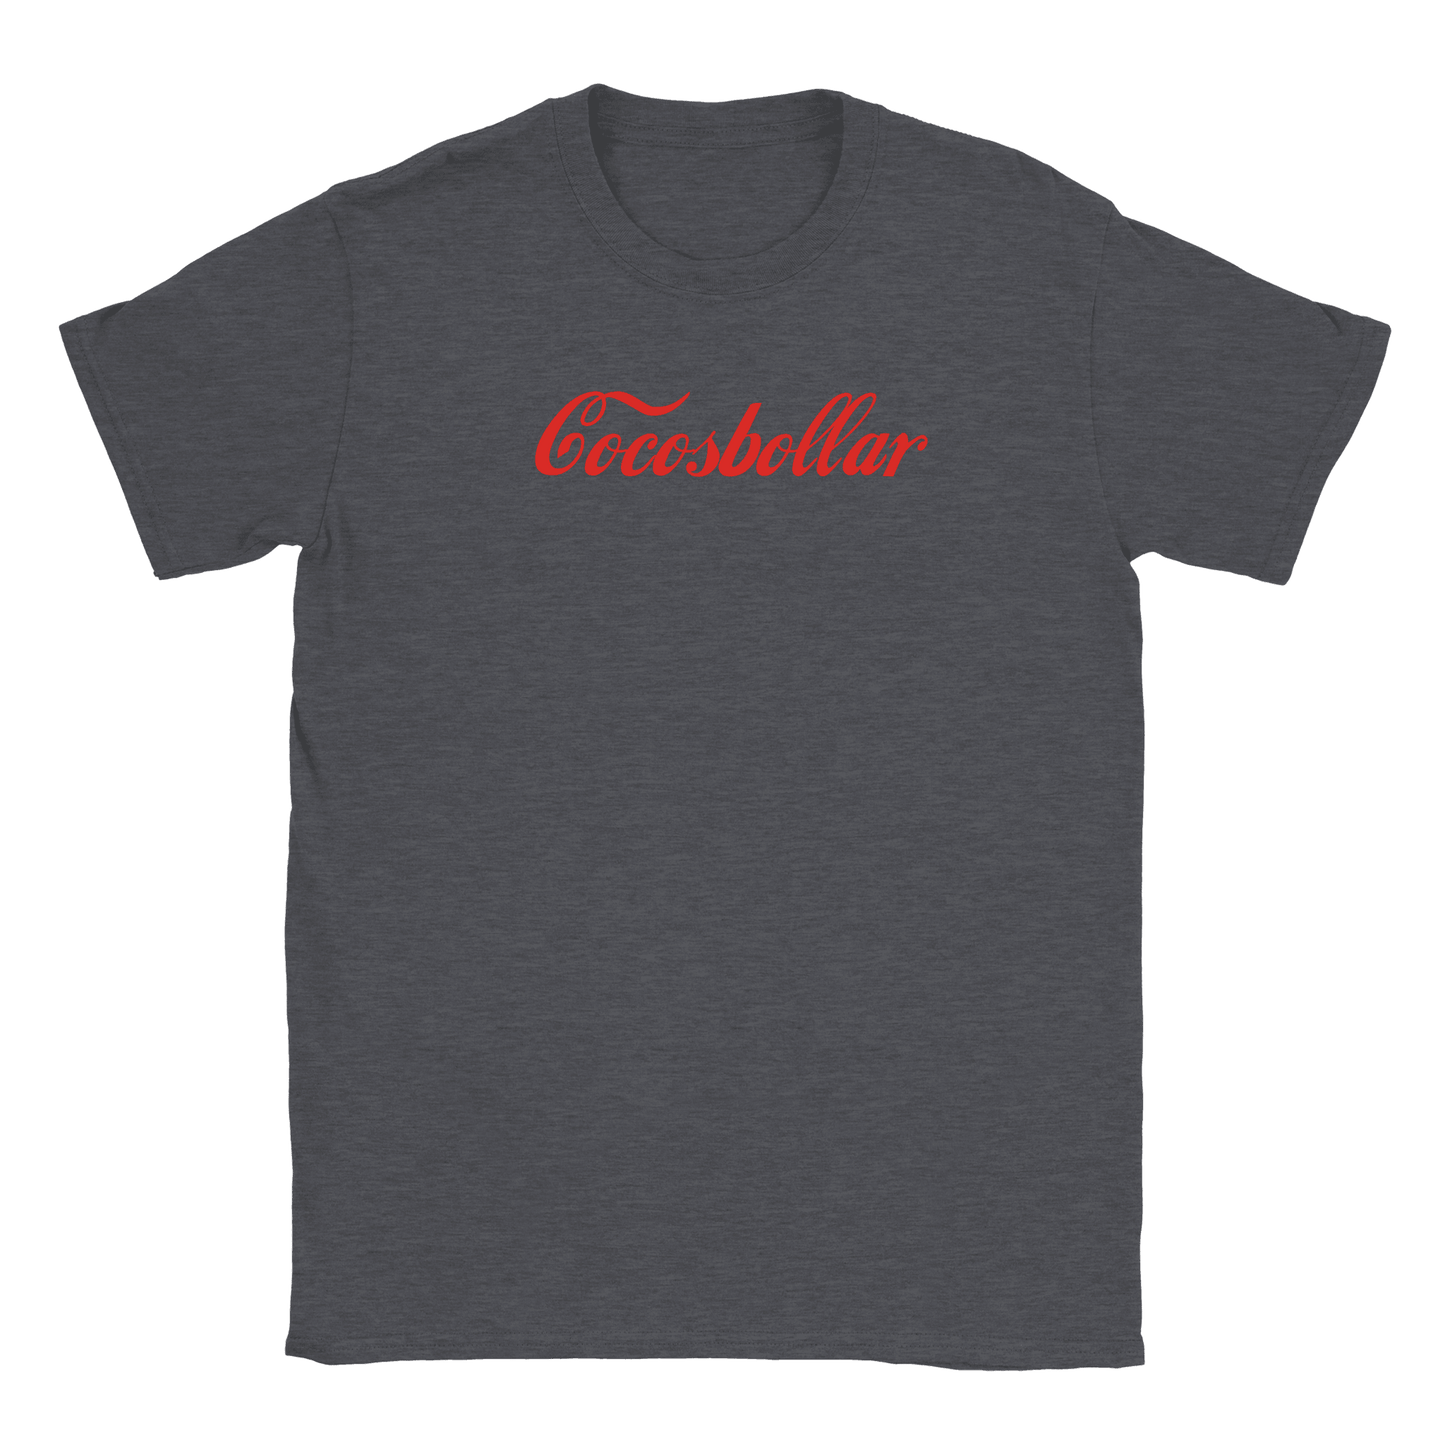 Cocosbollar - T-shirt Mörkgrå